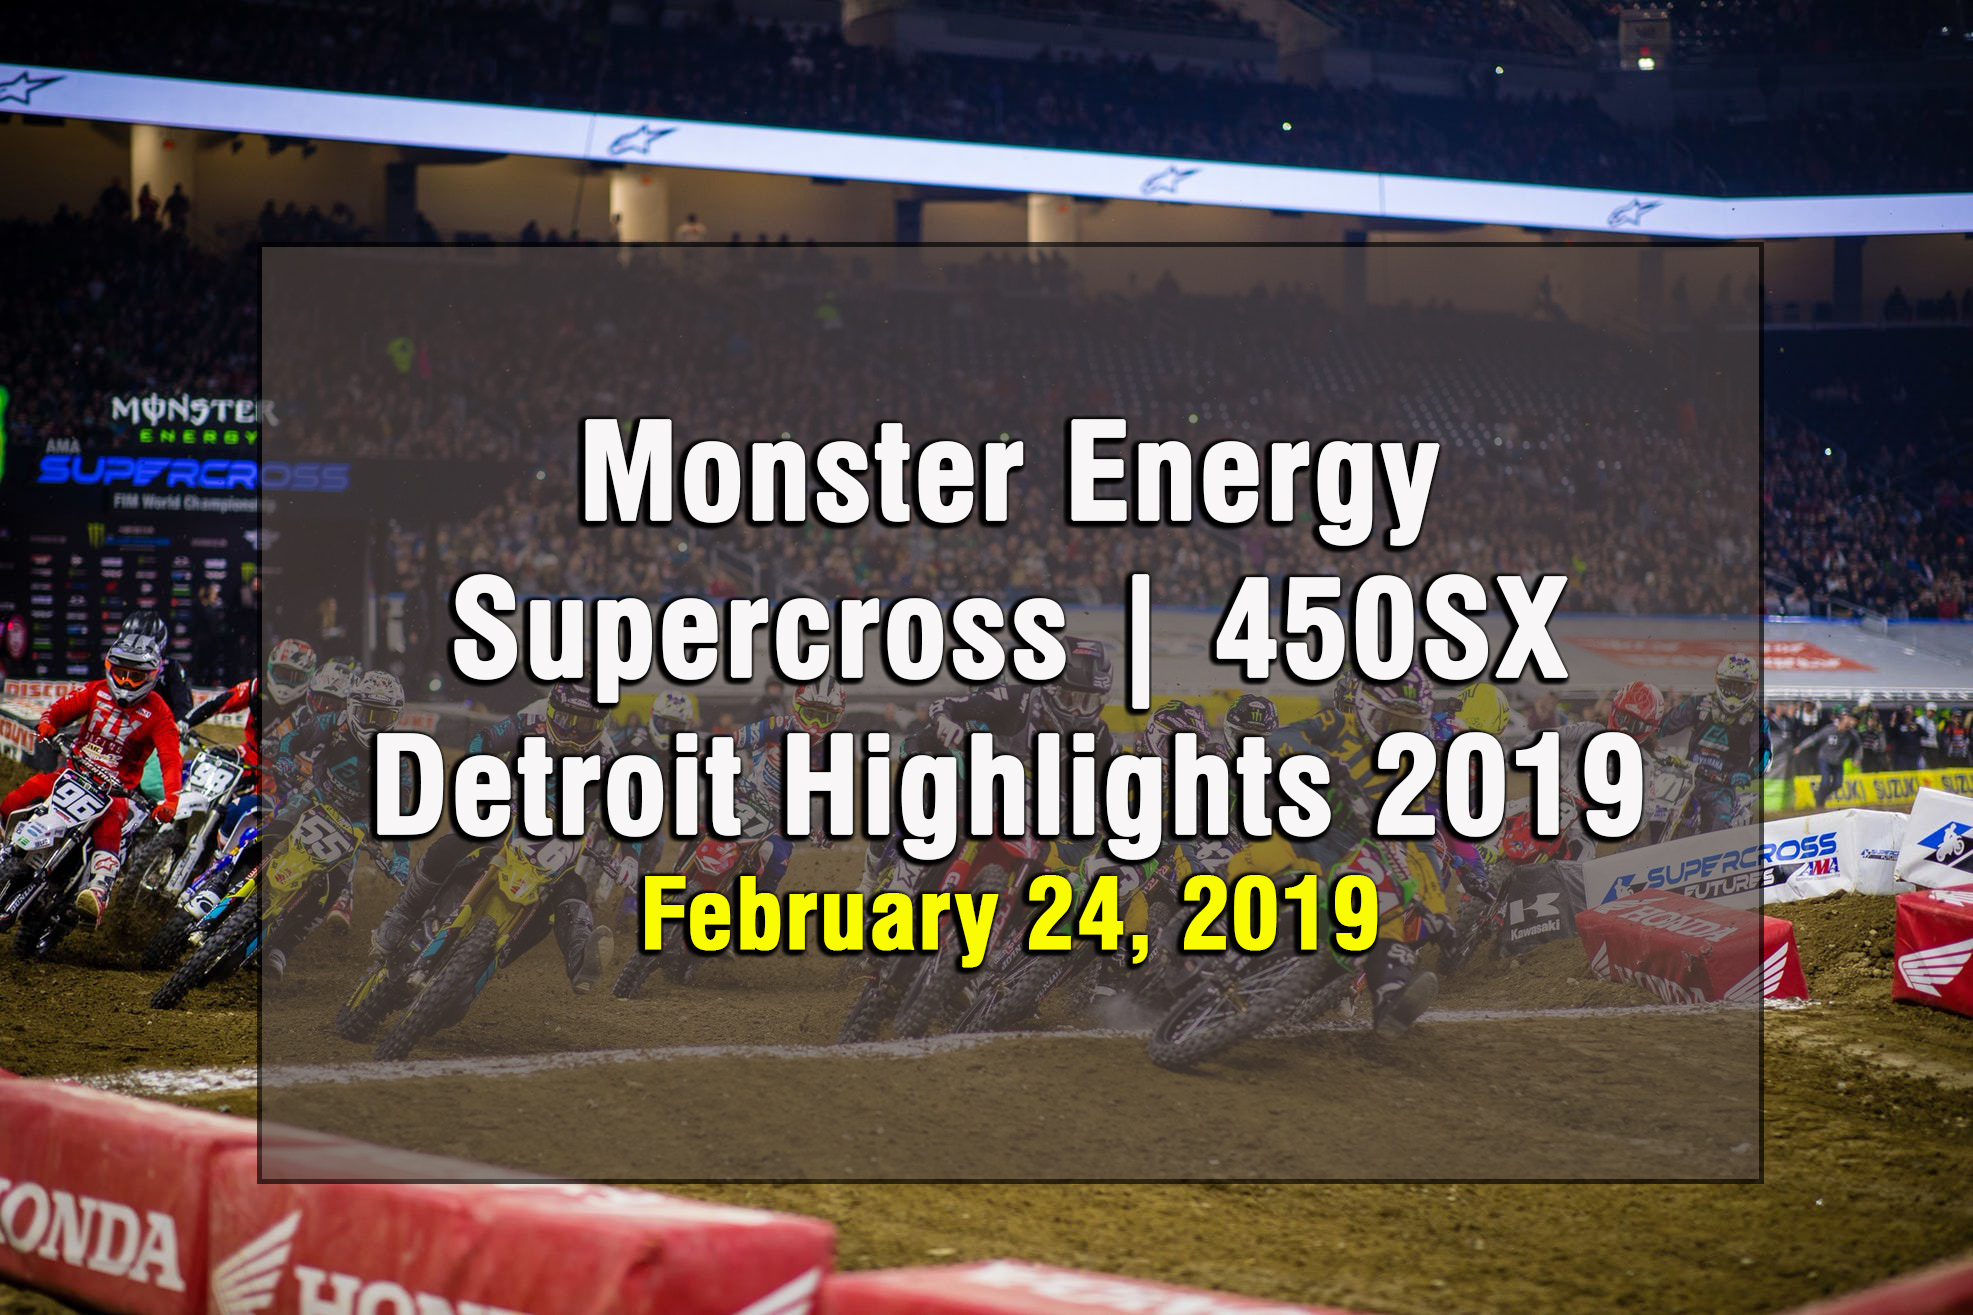 Monster Energy Supercross 450SX Detroit Highlights 2019